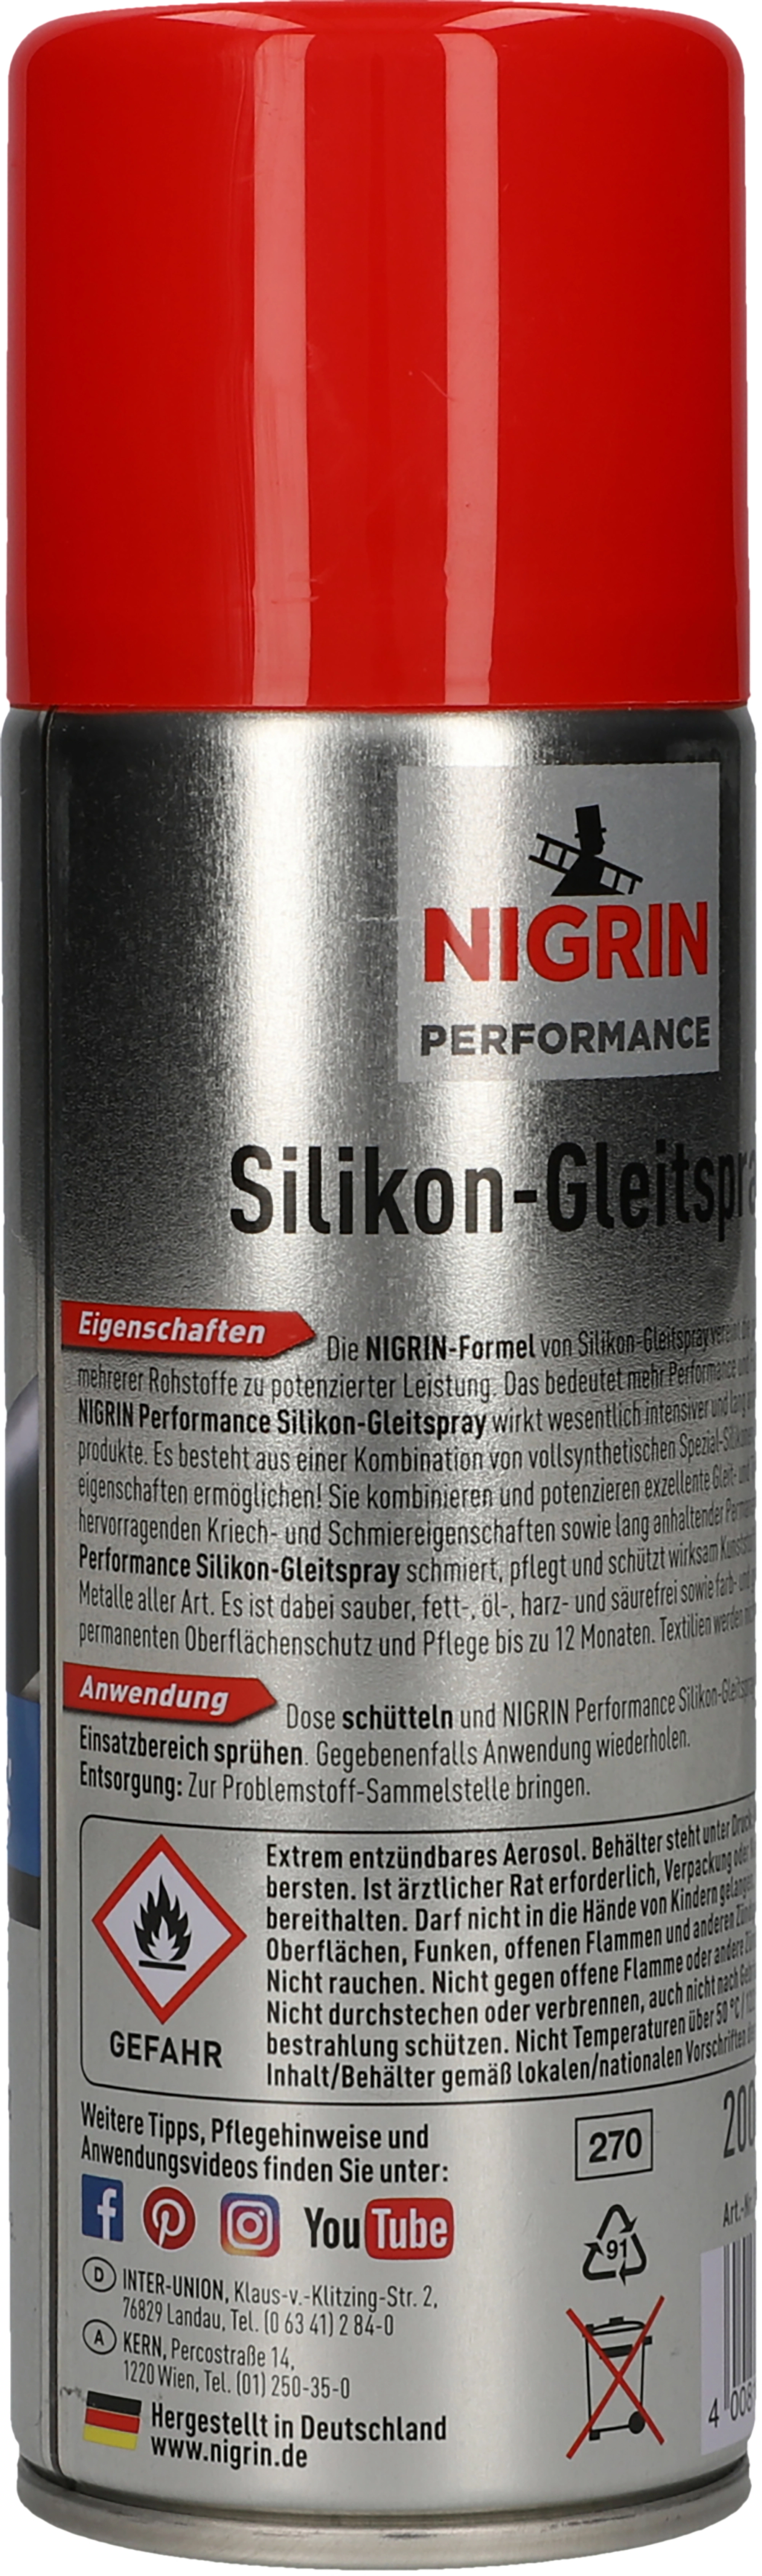 Nigrin Silikon-Gleitspray HyBrid 200 ml kaufen bei OBI